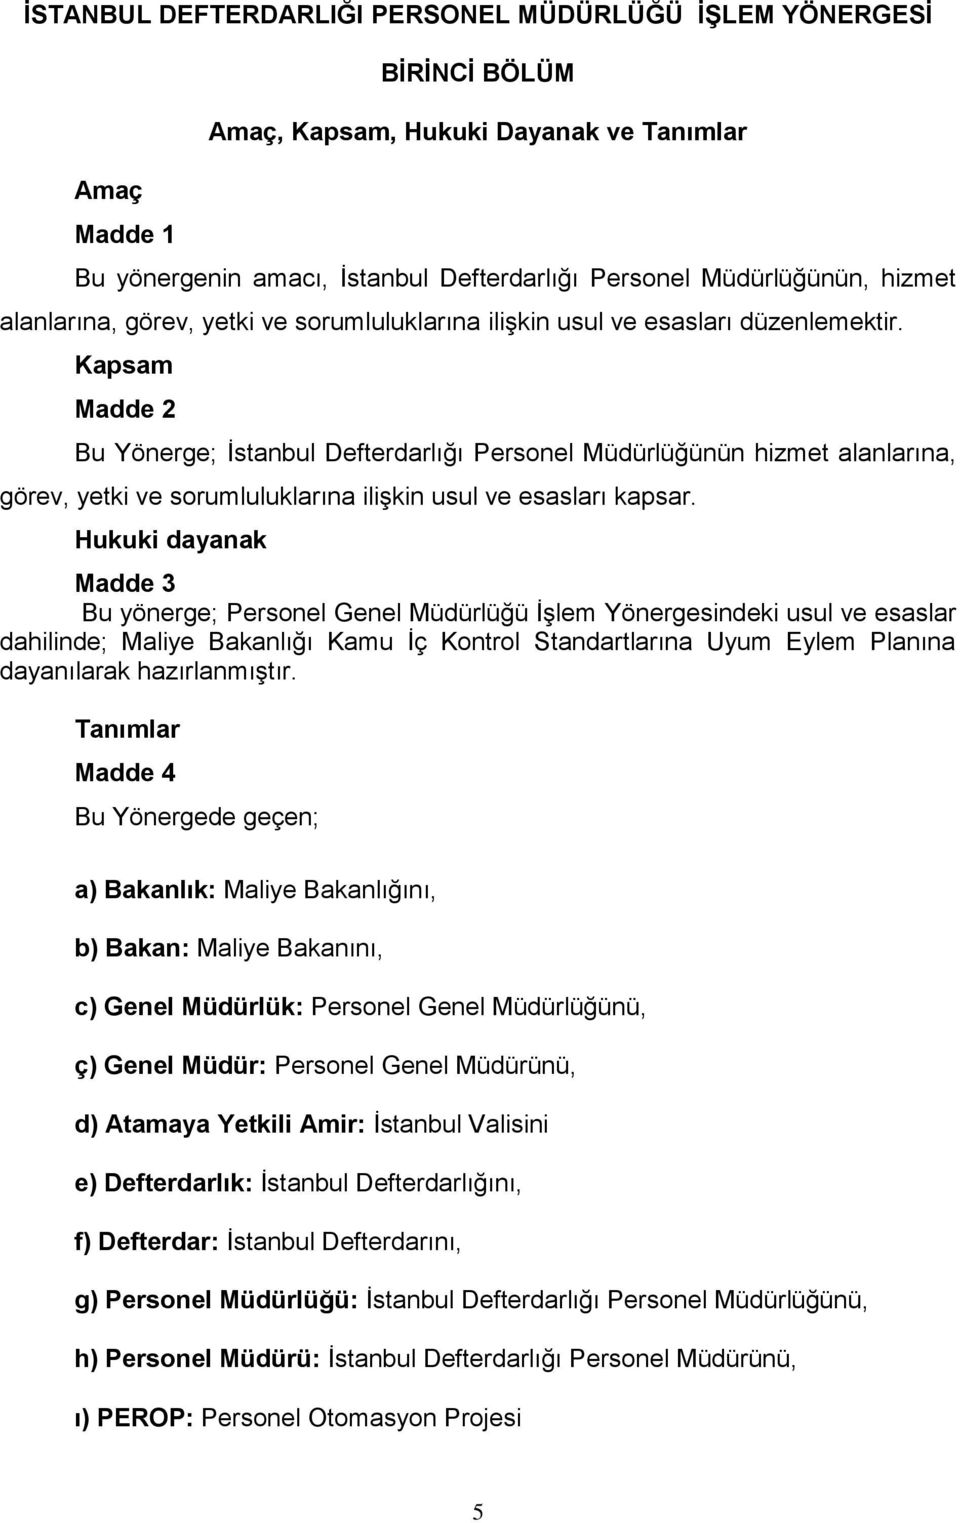 Kapsam Madde 2 Bu Yönerge; İstanbul Defterdarlığı Personel Müdürlüğünün hizmet alanlarına, görev, yetki ve sorumluluklarına ilişkin usul ve esasları kapsar.